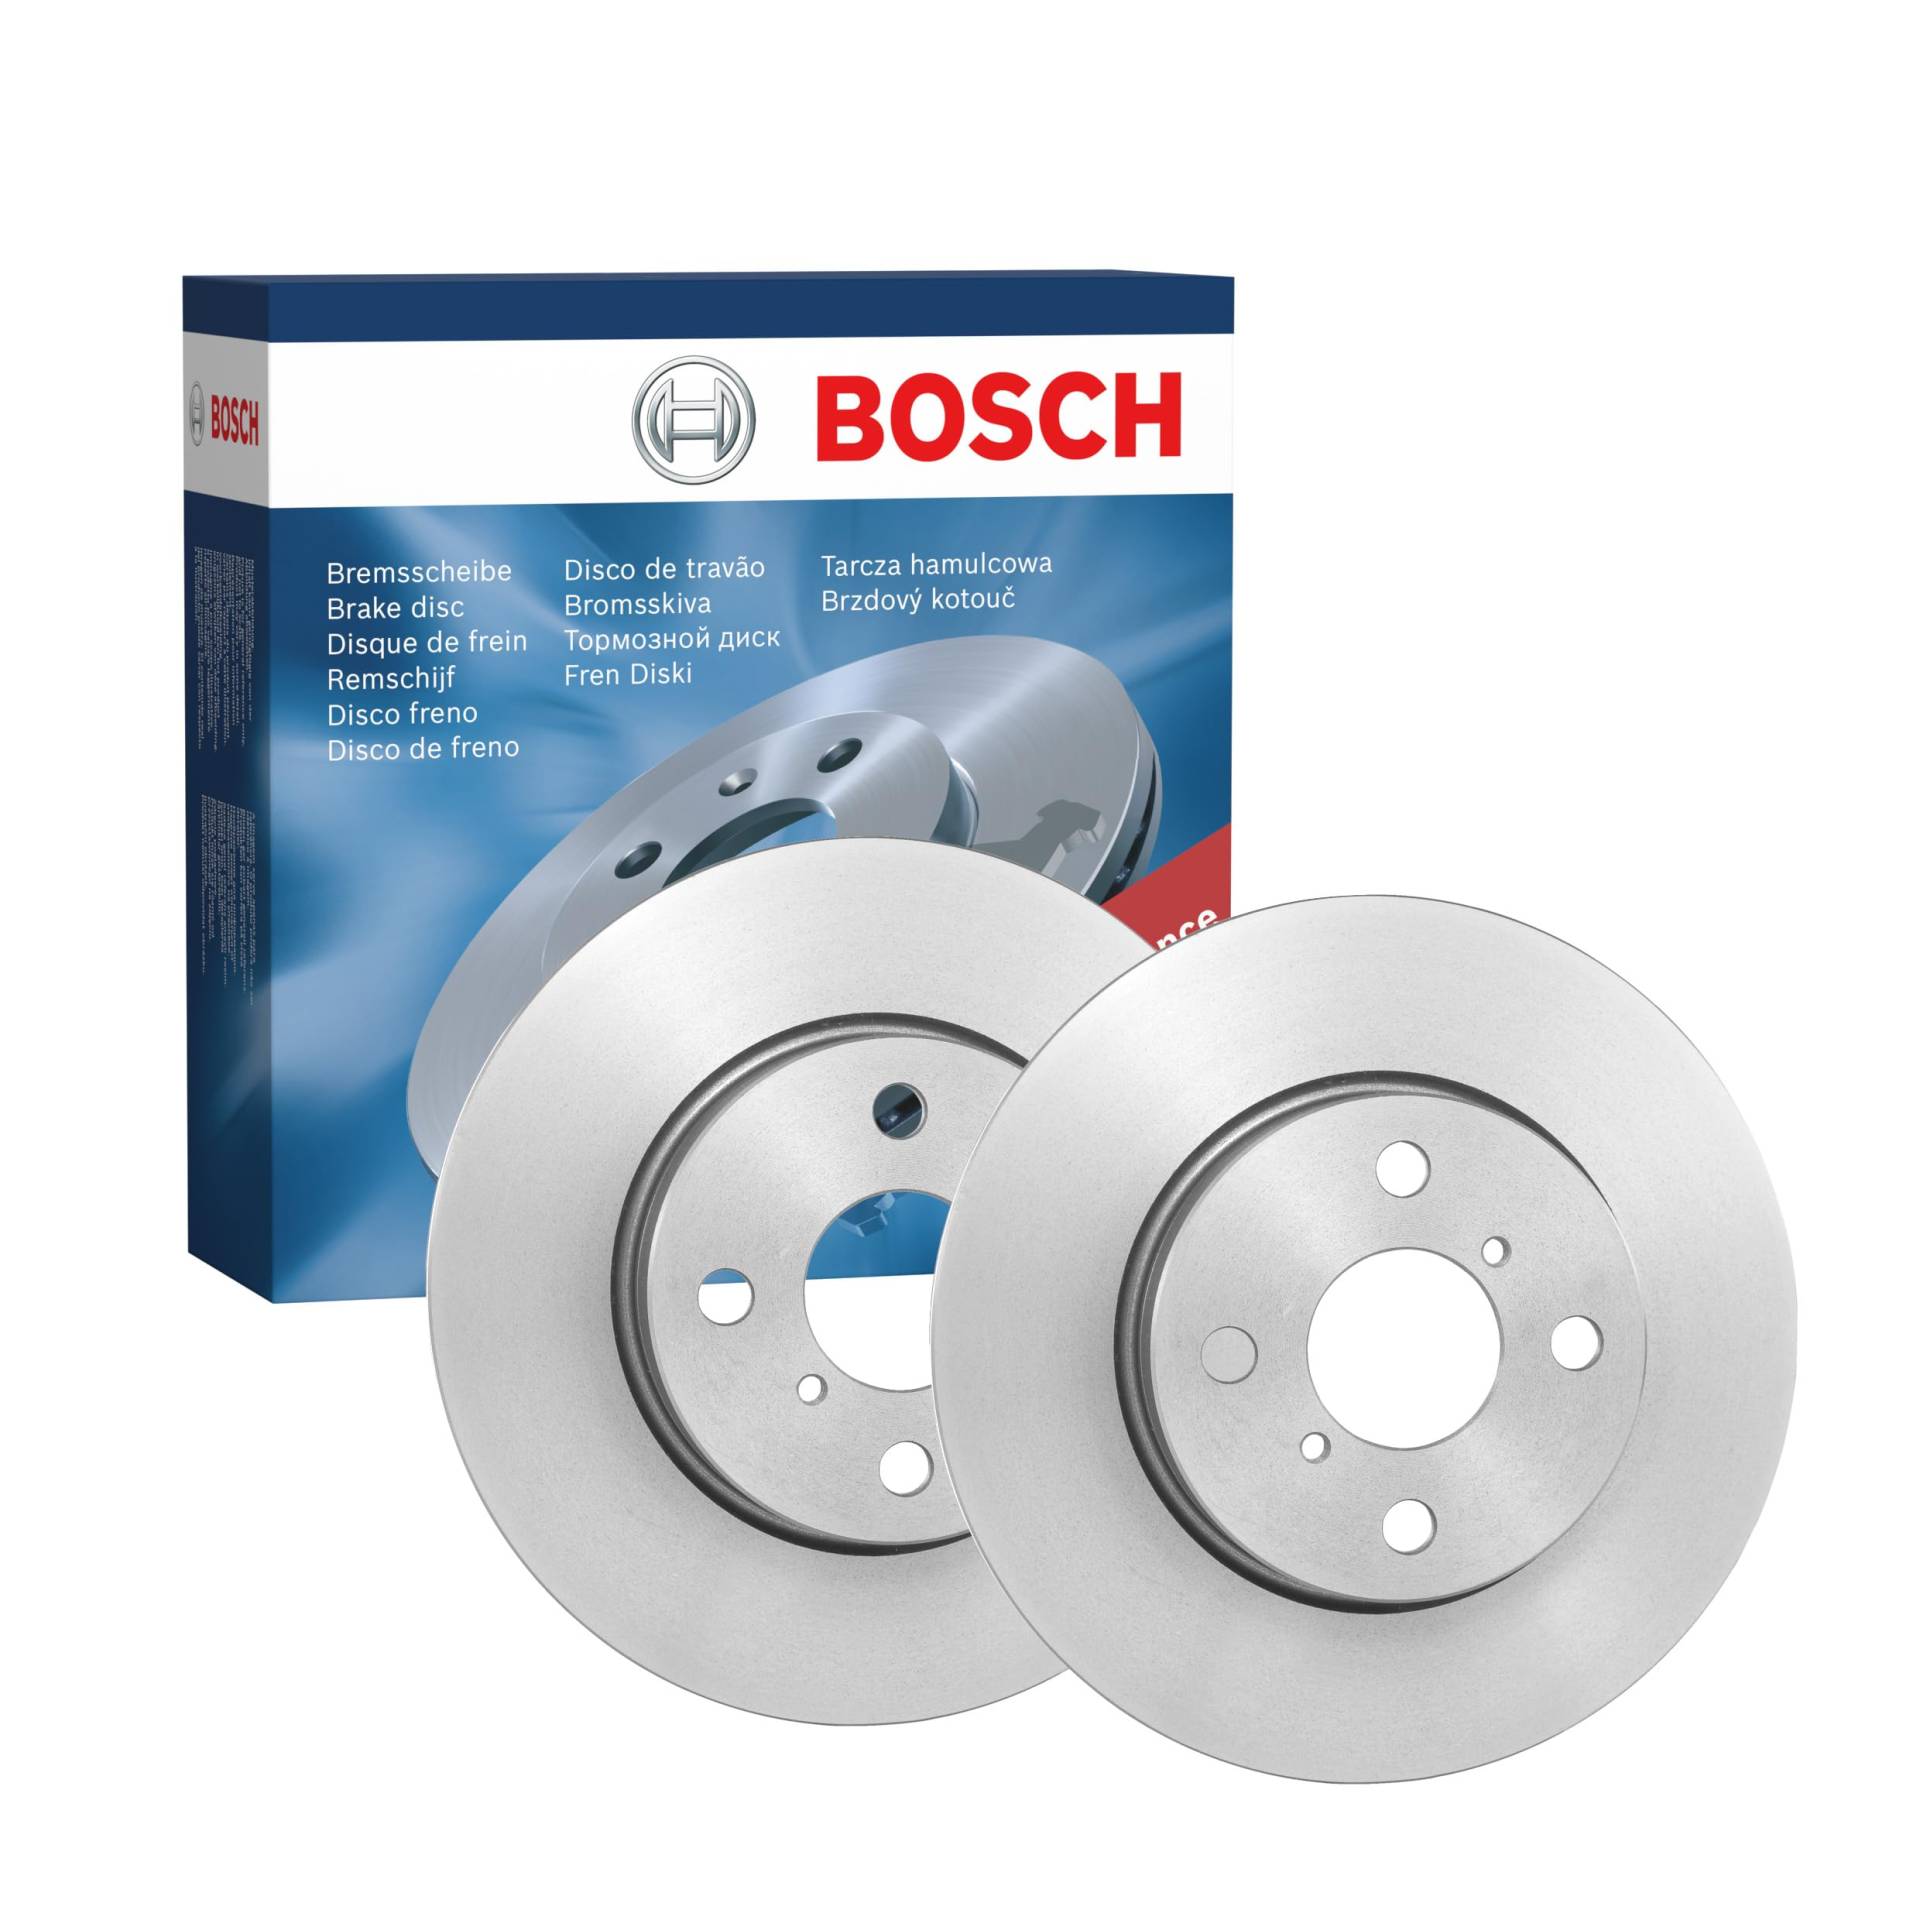 Bosch BD1240 Bremsscheiben - Vorderachse - ECE-R90 Zertifizierung - zwei Bremsscheiben pro Set von Bosch Automotive